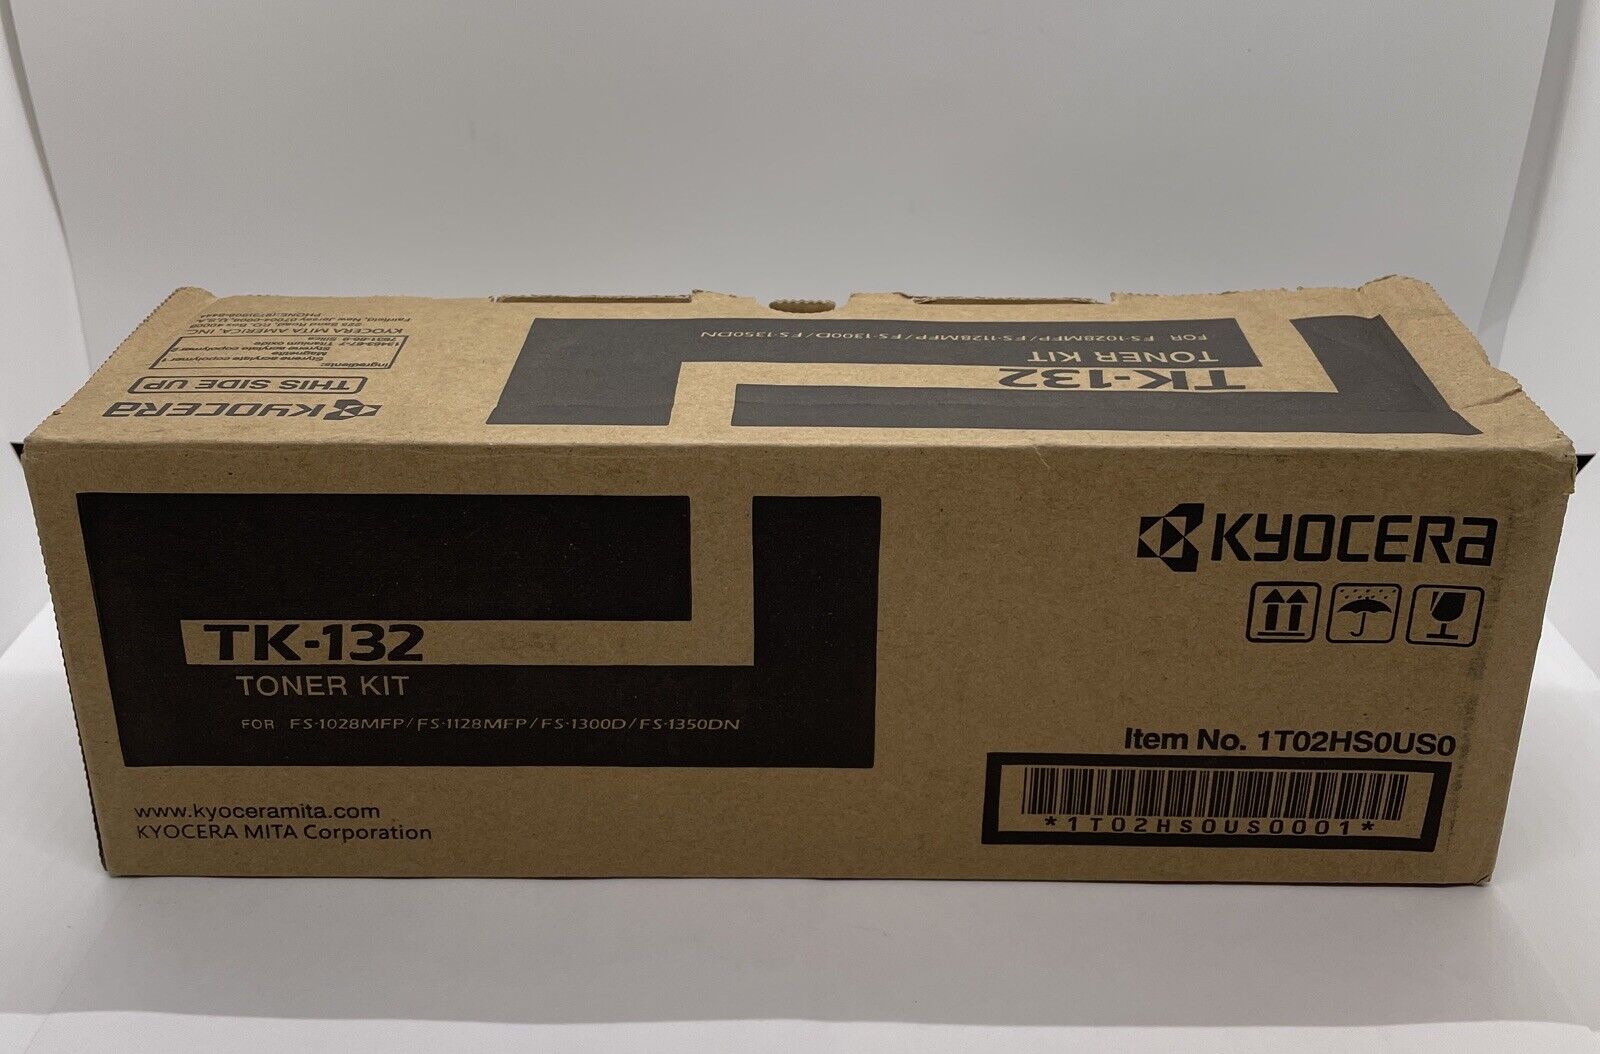 Genuine Kyocera TK-132 Black Toner Kit Cartridge OEM for FS-1028MFP FS-1128MFP